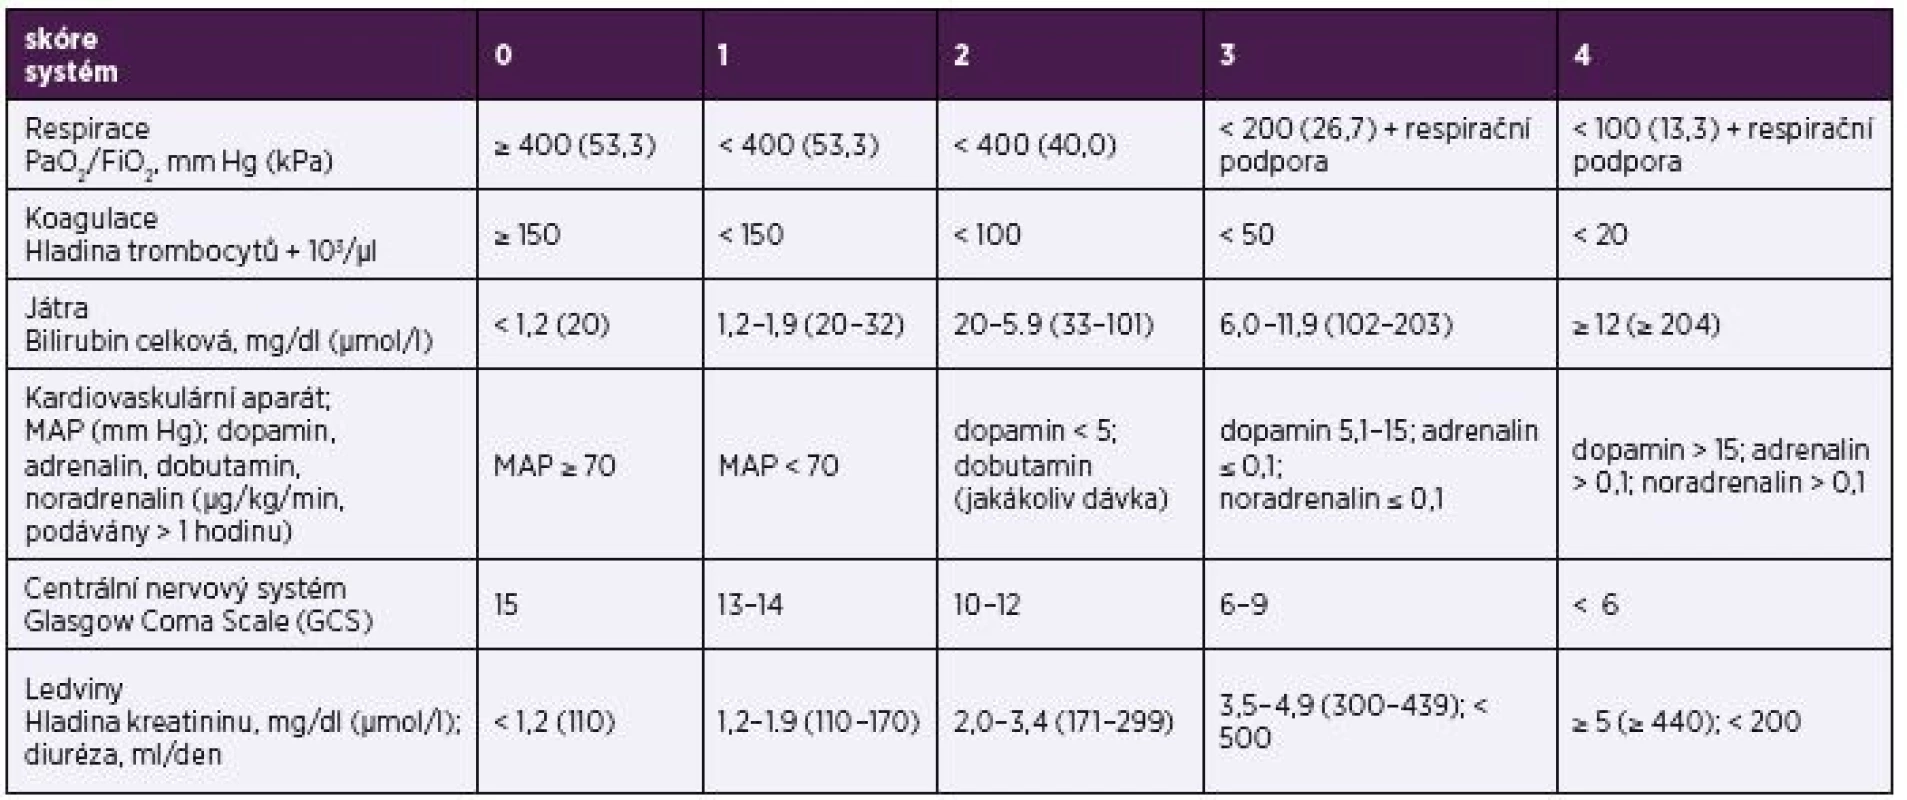 Sequential Organ Failure Assessment (SOFA) skóre
Table 4. Sequential Organ Failure Assessment (SOFA) score